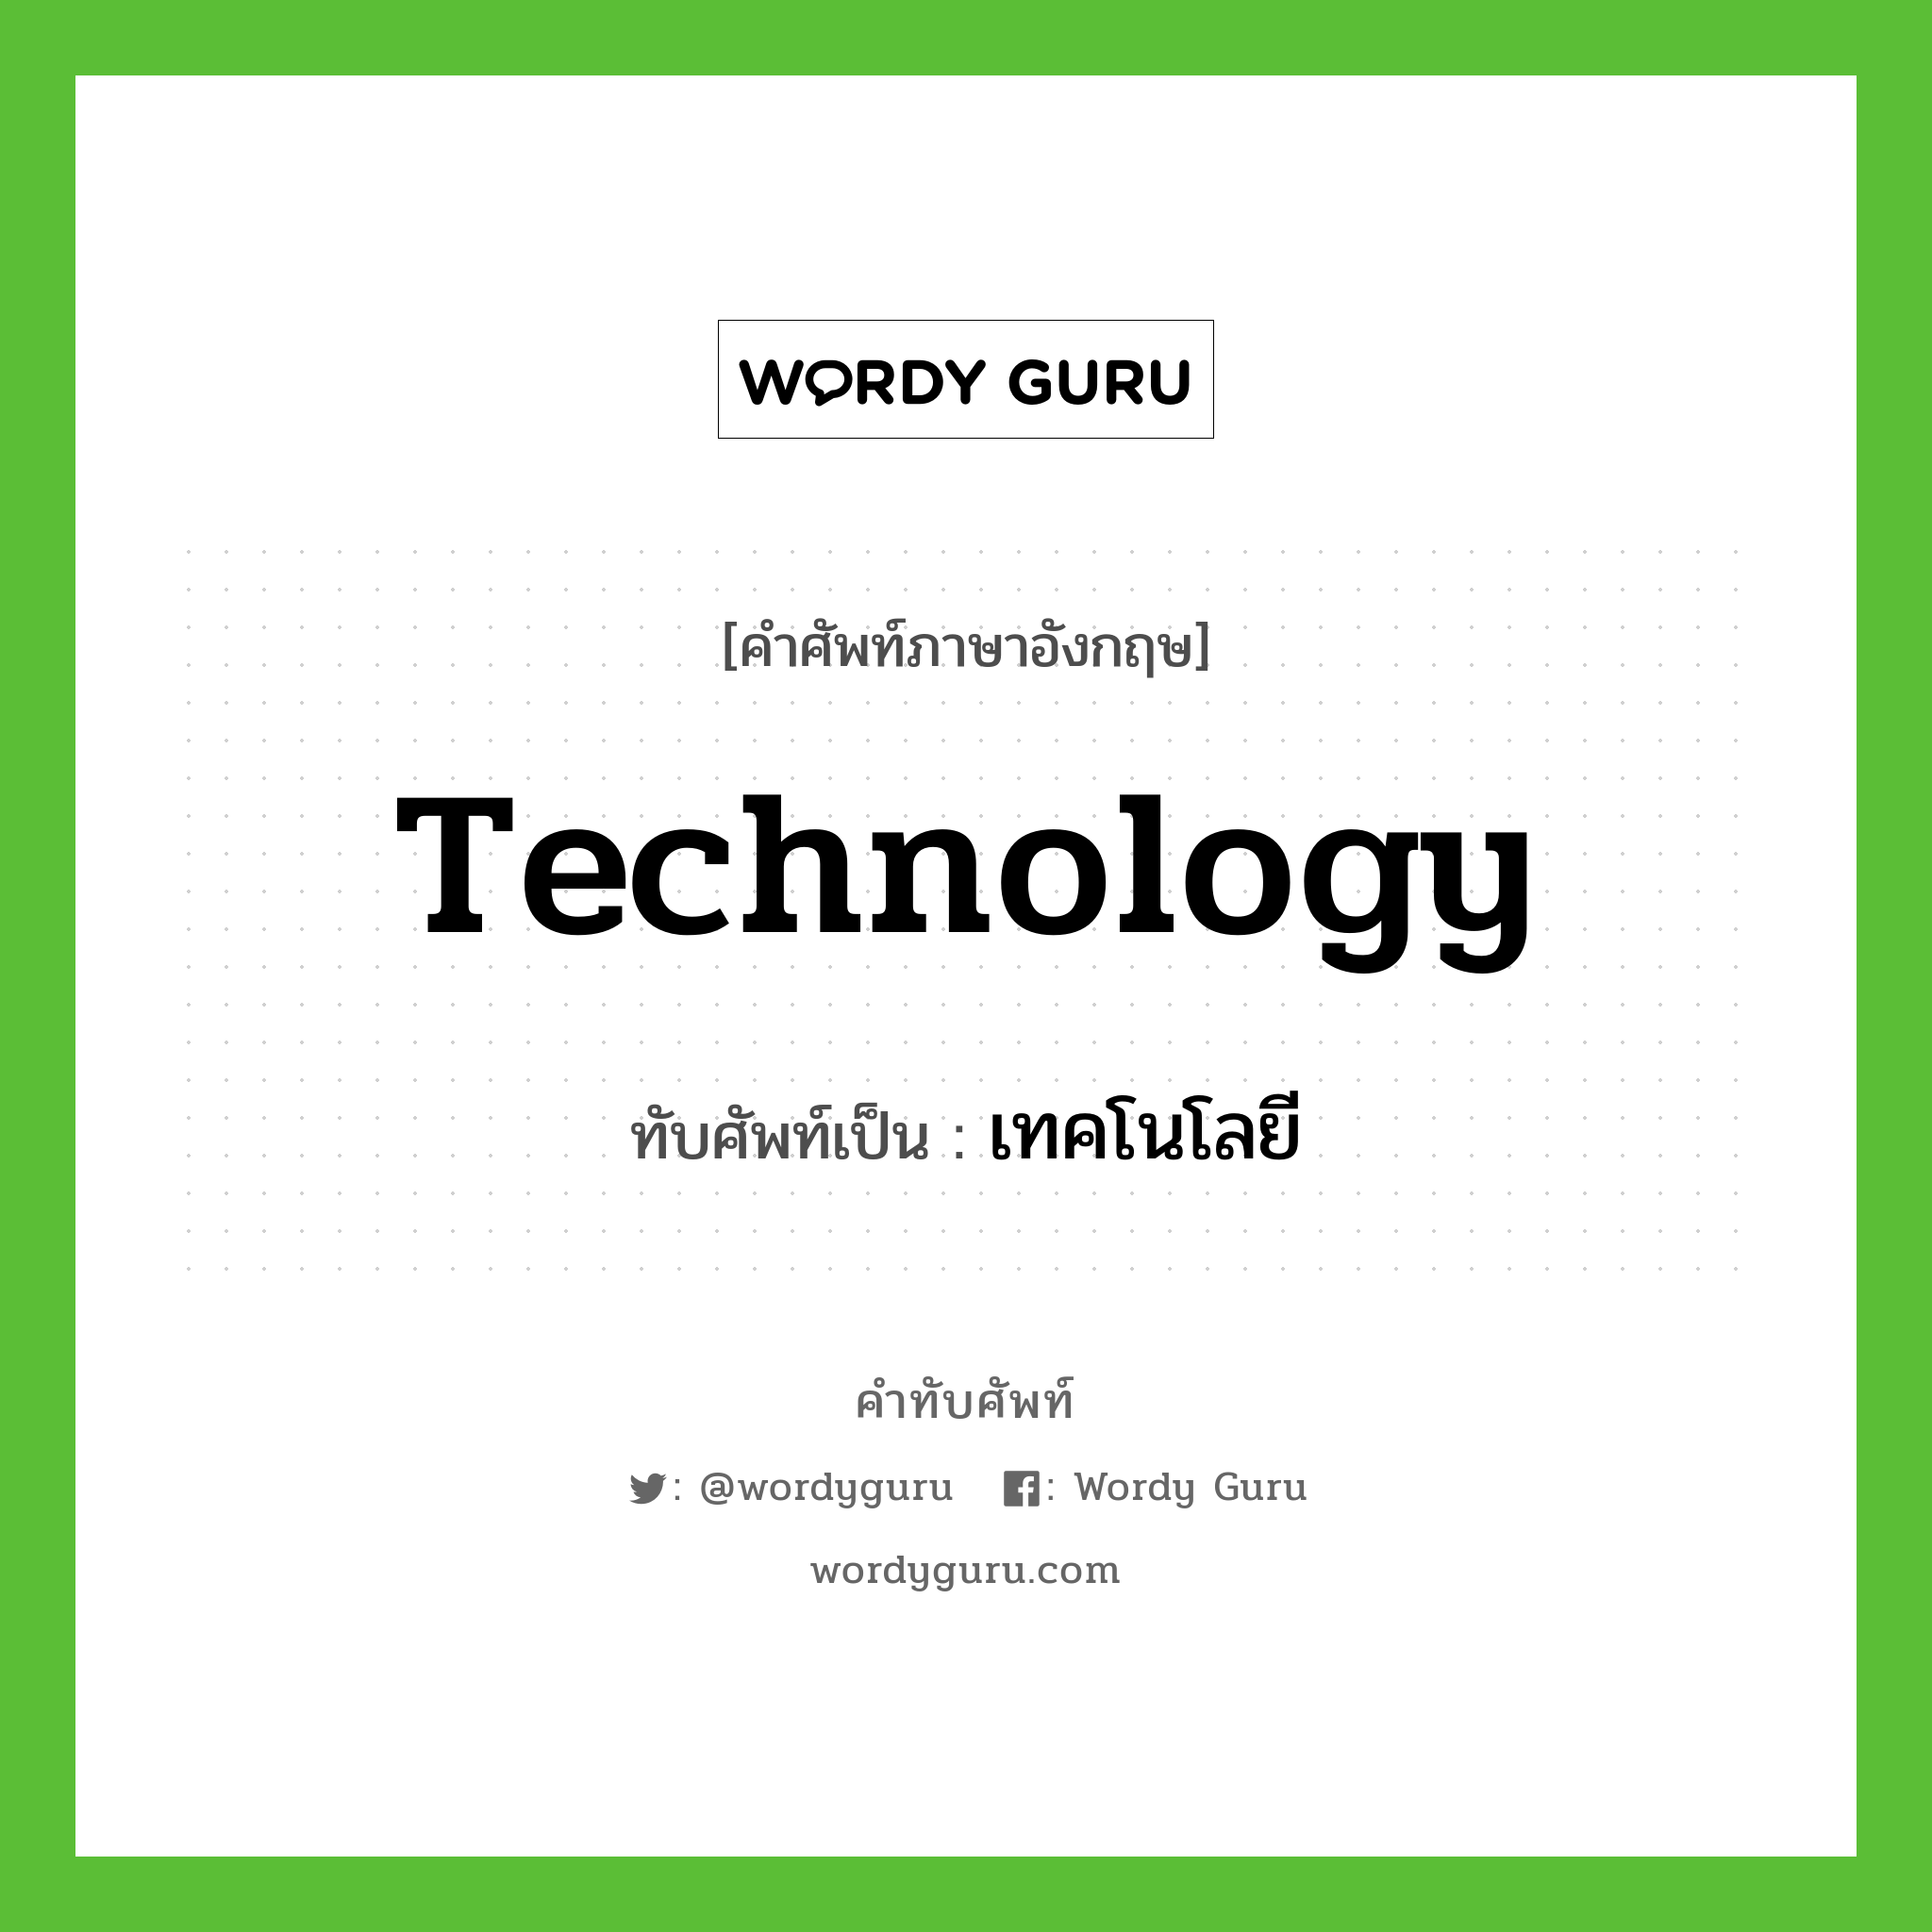 เทคโนโลยี เขียนอย่างไร?, คำศัพท์ภาษาอังกฤษ เทคโนโลยี ทับศัพท์เป็น technology